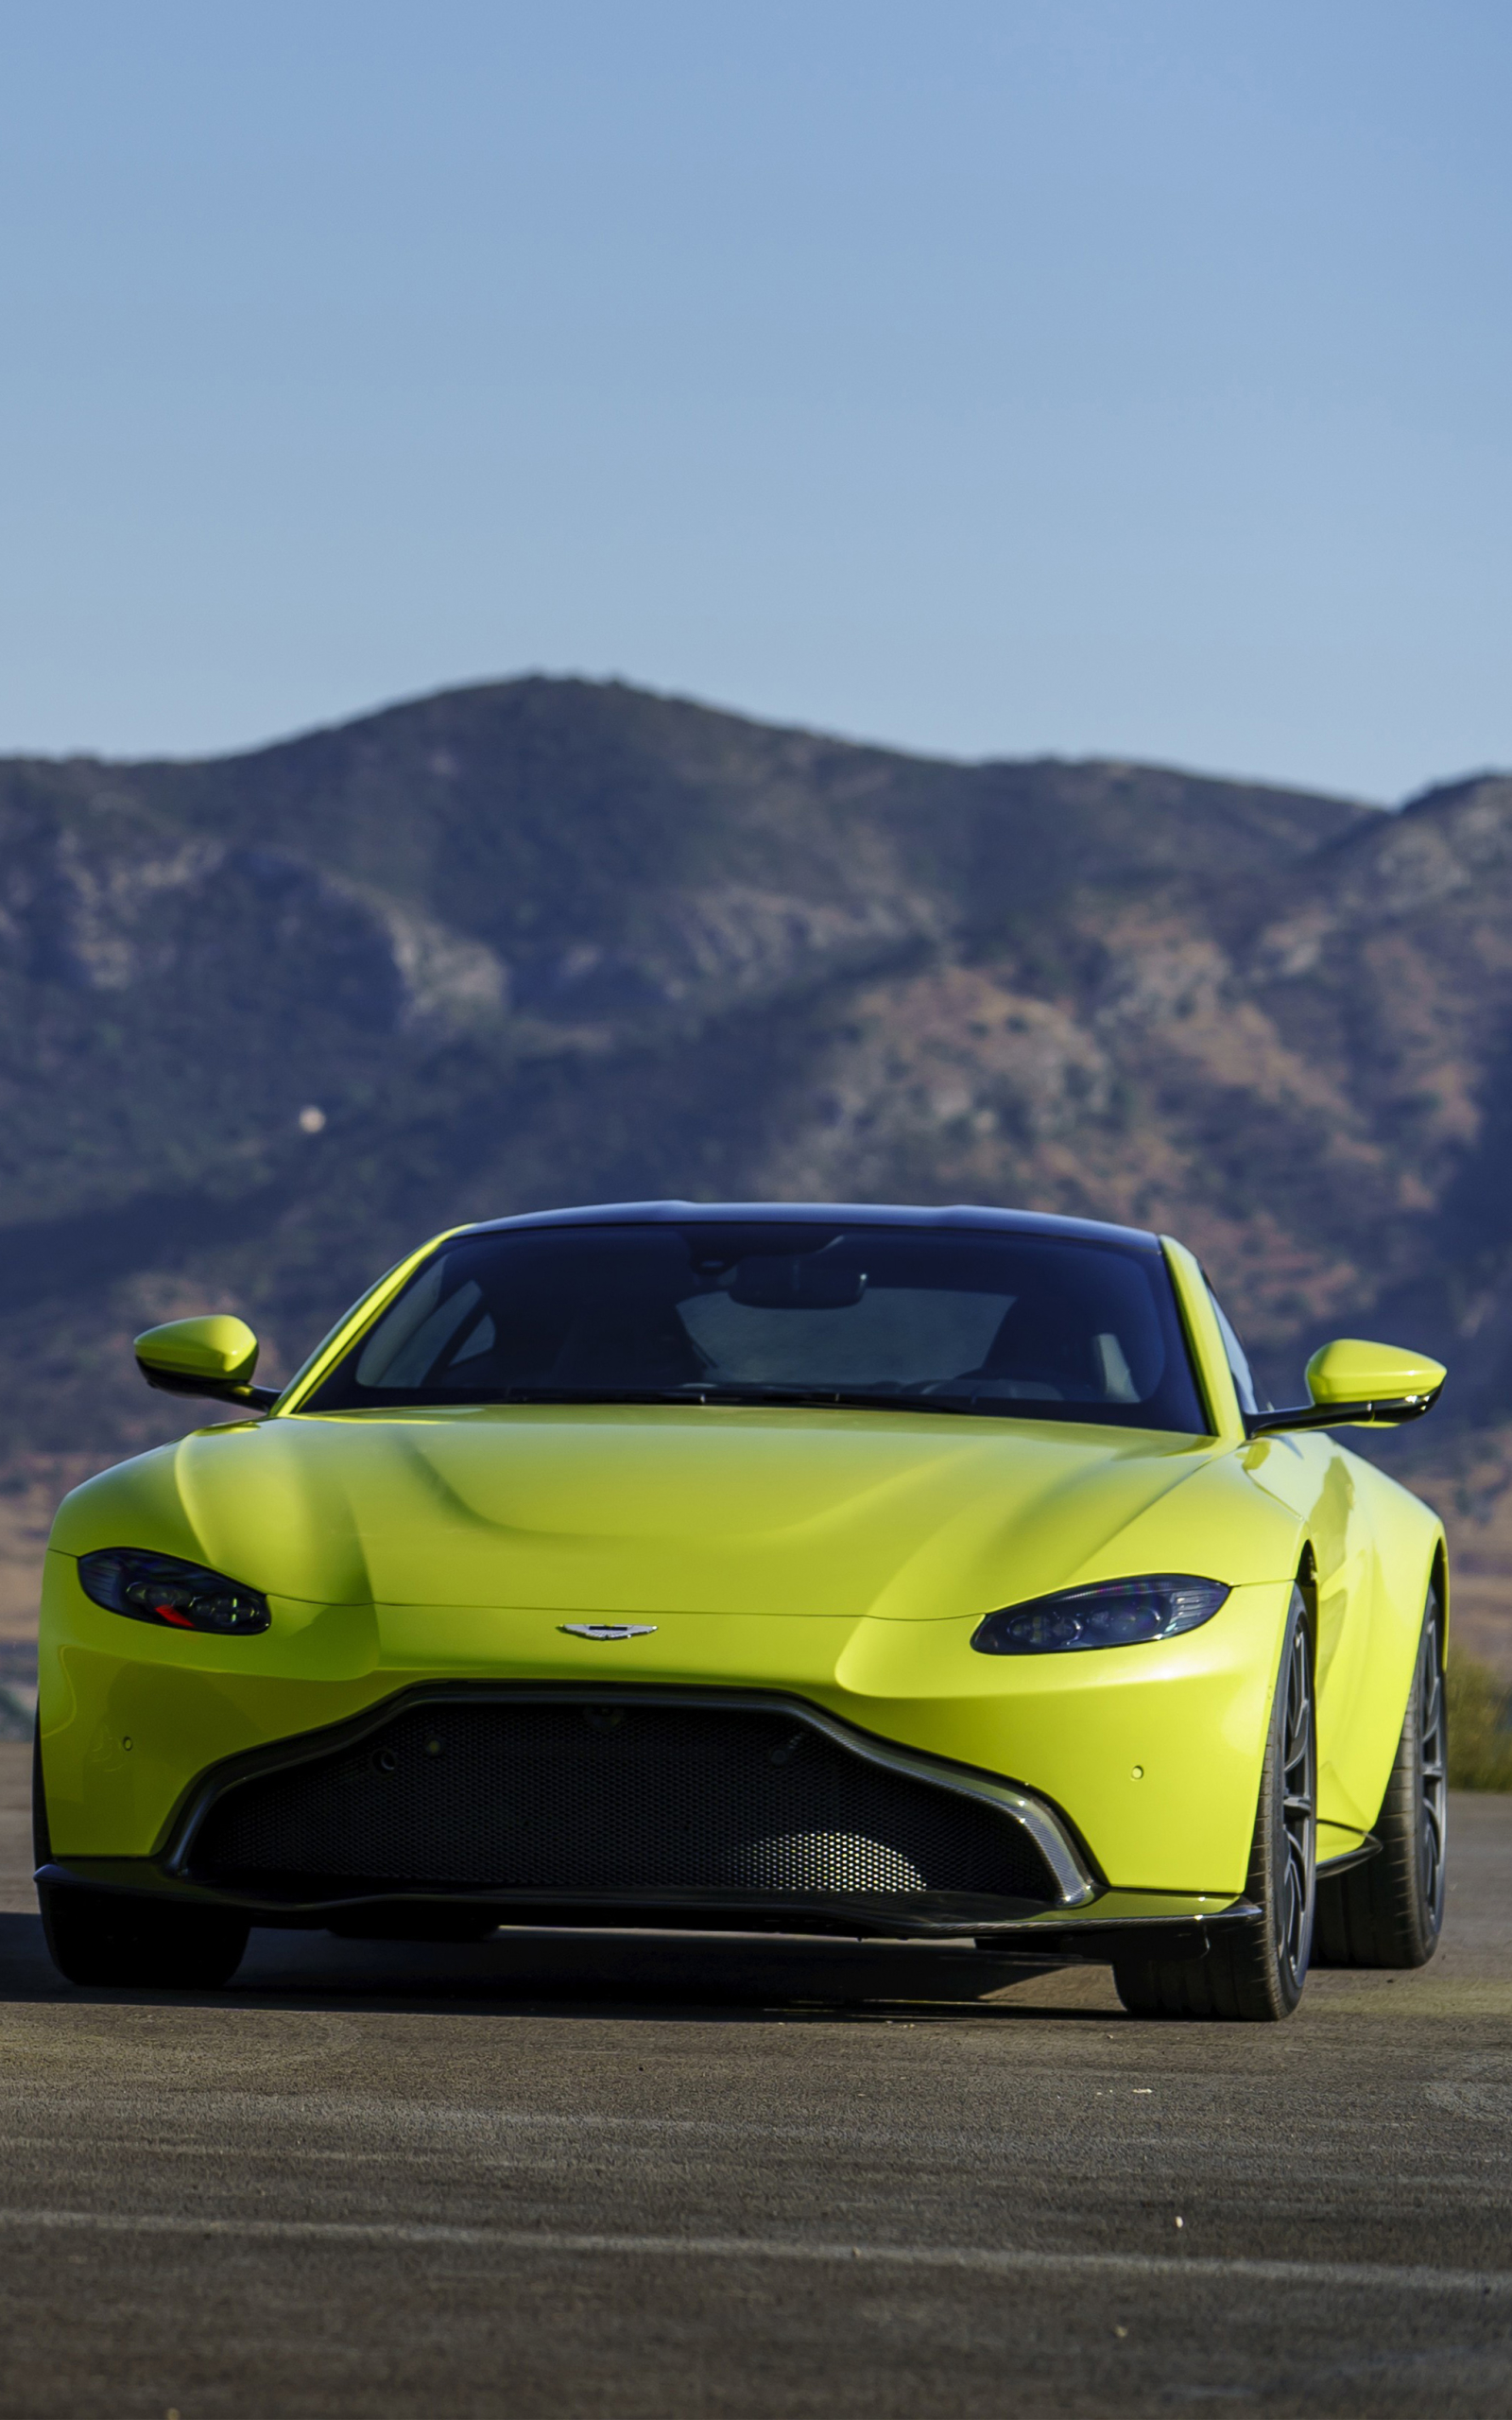 Descarga gratuita de fondo de pantalla para móvil de Aston Martin, Coche De Carreras, Vehículos, Aston Martin Vantage, Aston Martin Vantage Gte.